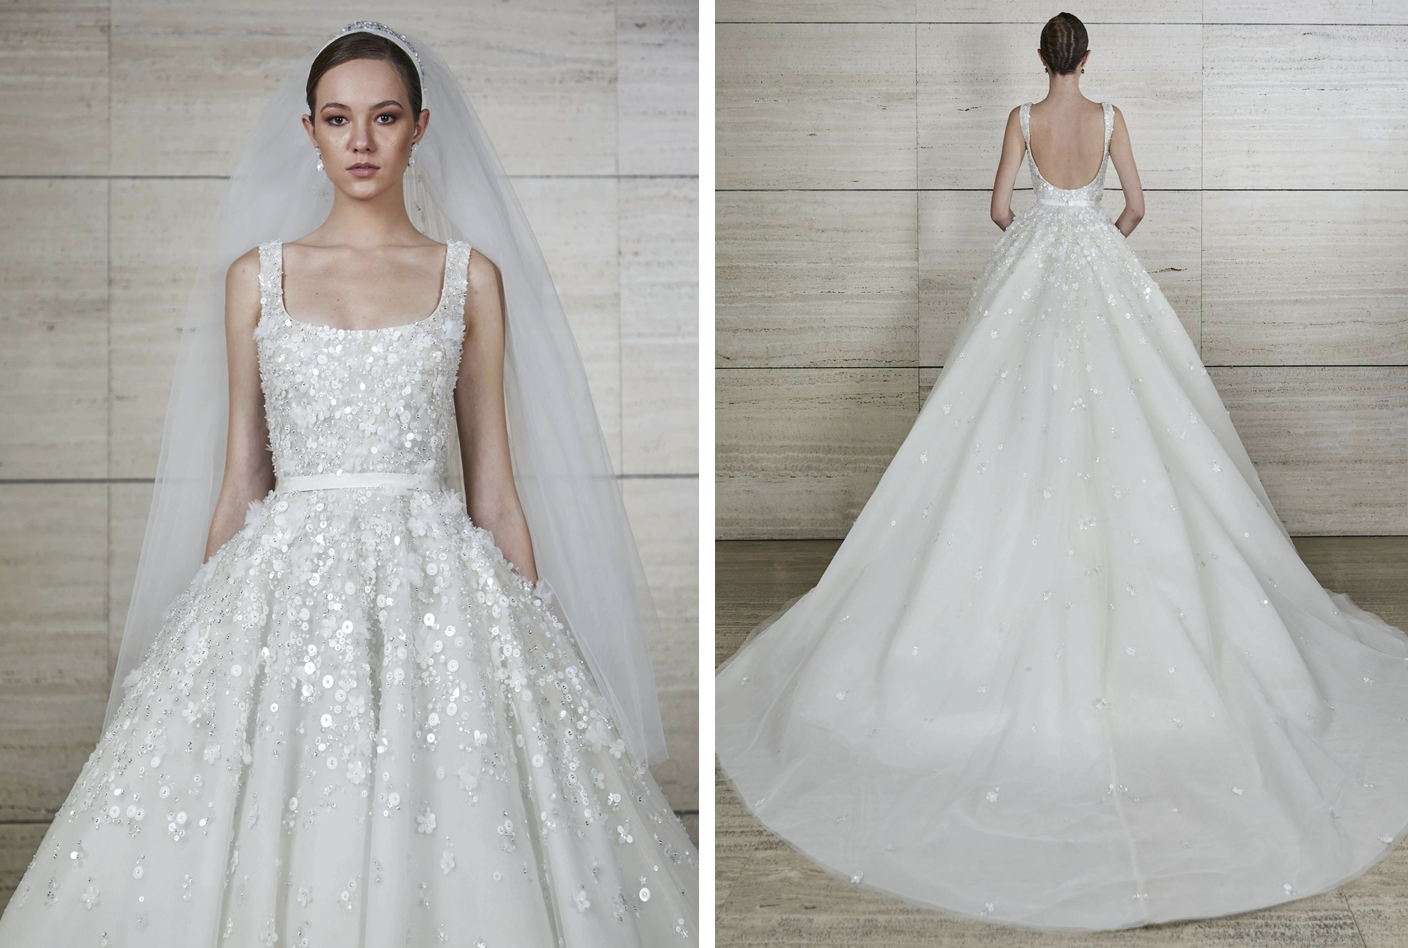 Chiếc váy cưới cổ chữ U đính cườm tinh tế với tùng xòe rộng của Elie Saab có giá 22.950$, tương đương nửa tỉ đồng.